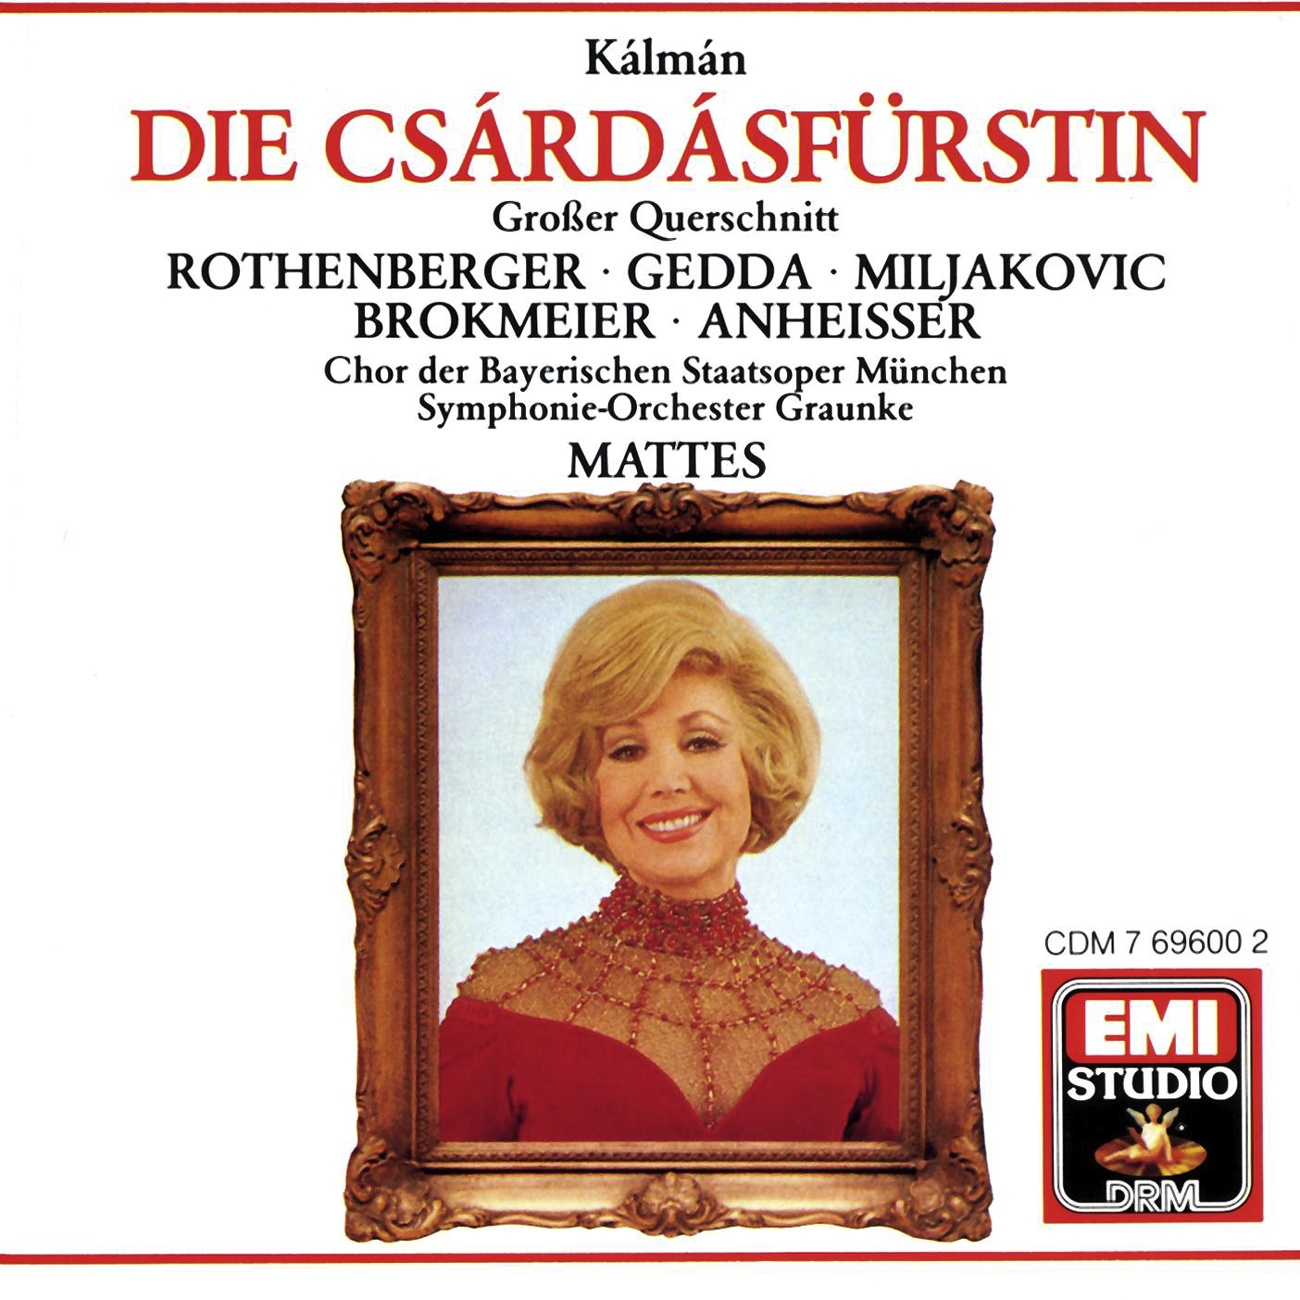 Die Csa rda sfü rstin  Operette in 3 Akten Highlights 1988 Digital Remaster: M del, guck  Das ist die Liebe Stasi  Boni, 3.